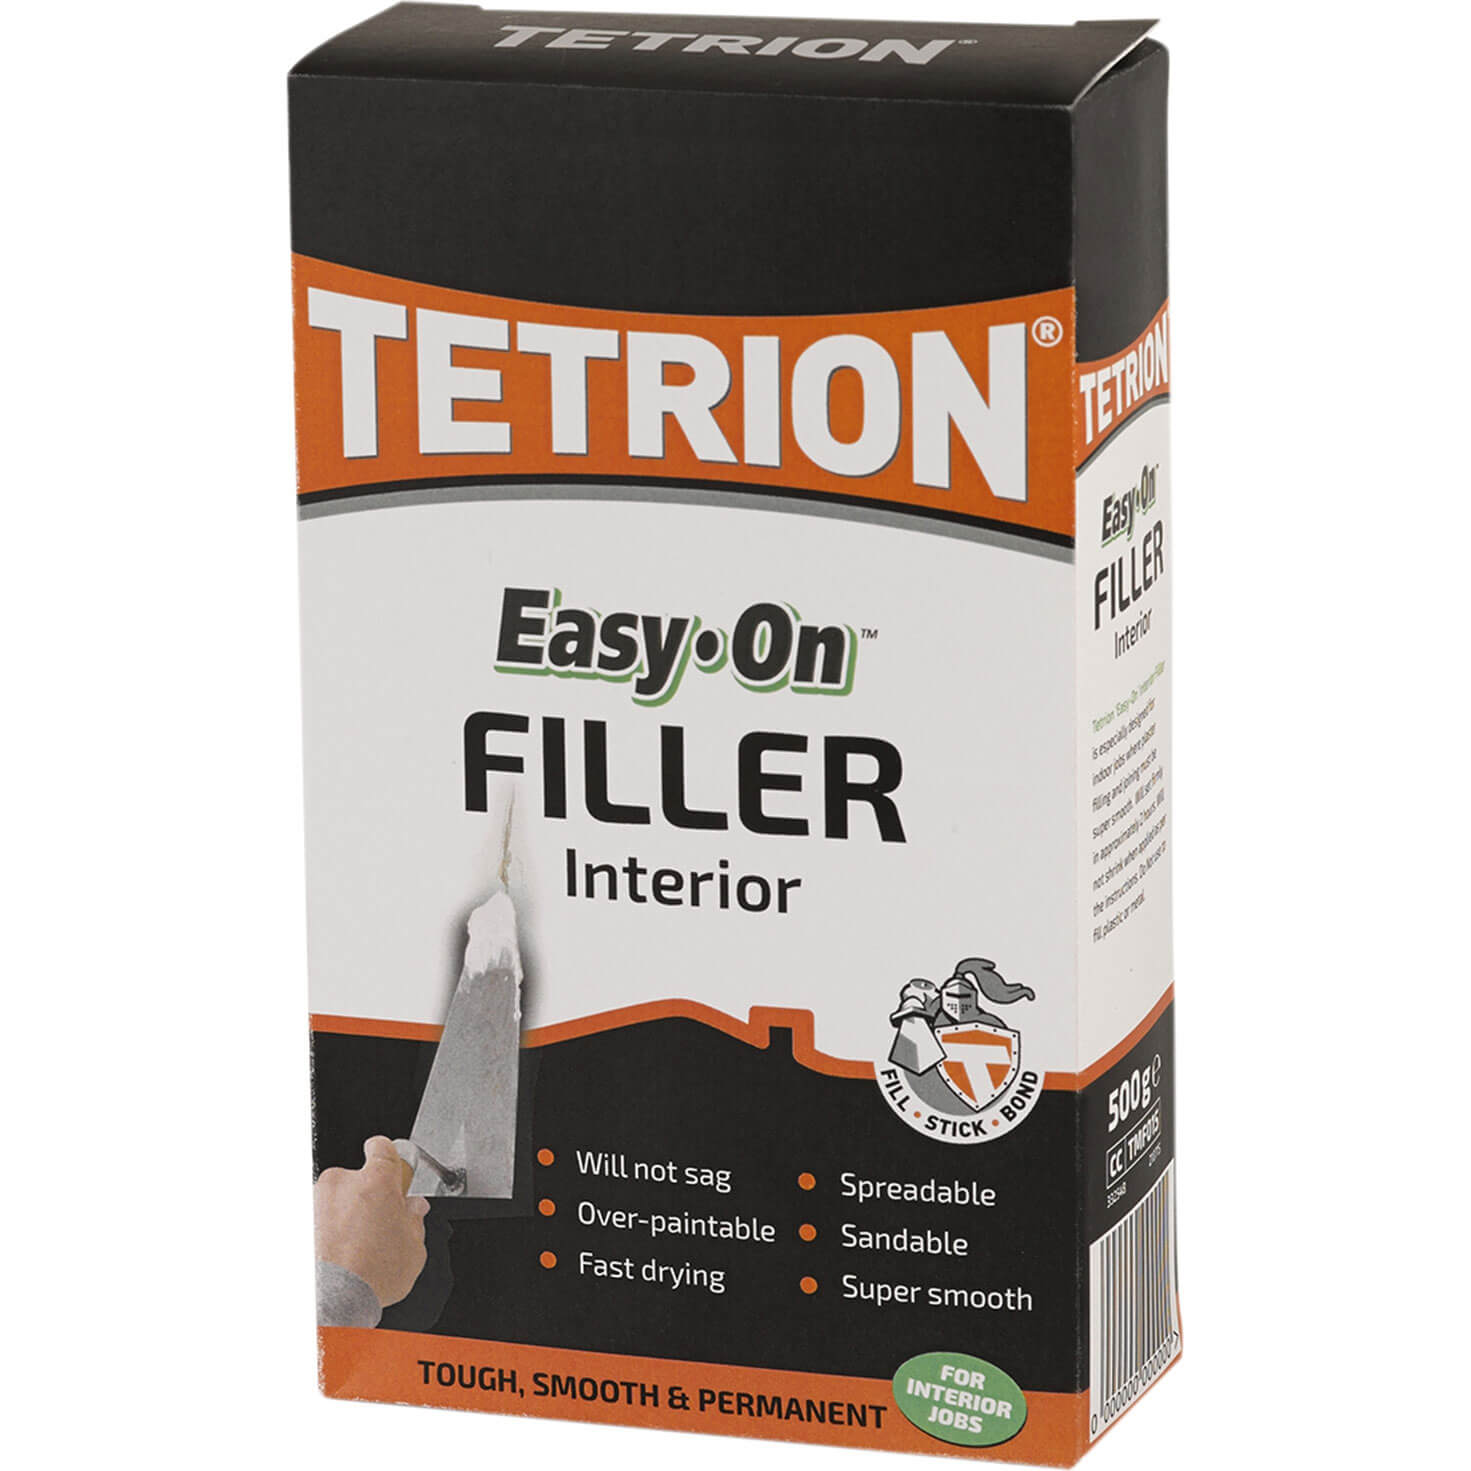 Image of Tetrion Interior Filler 1.5kg